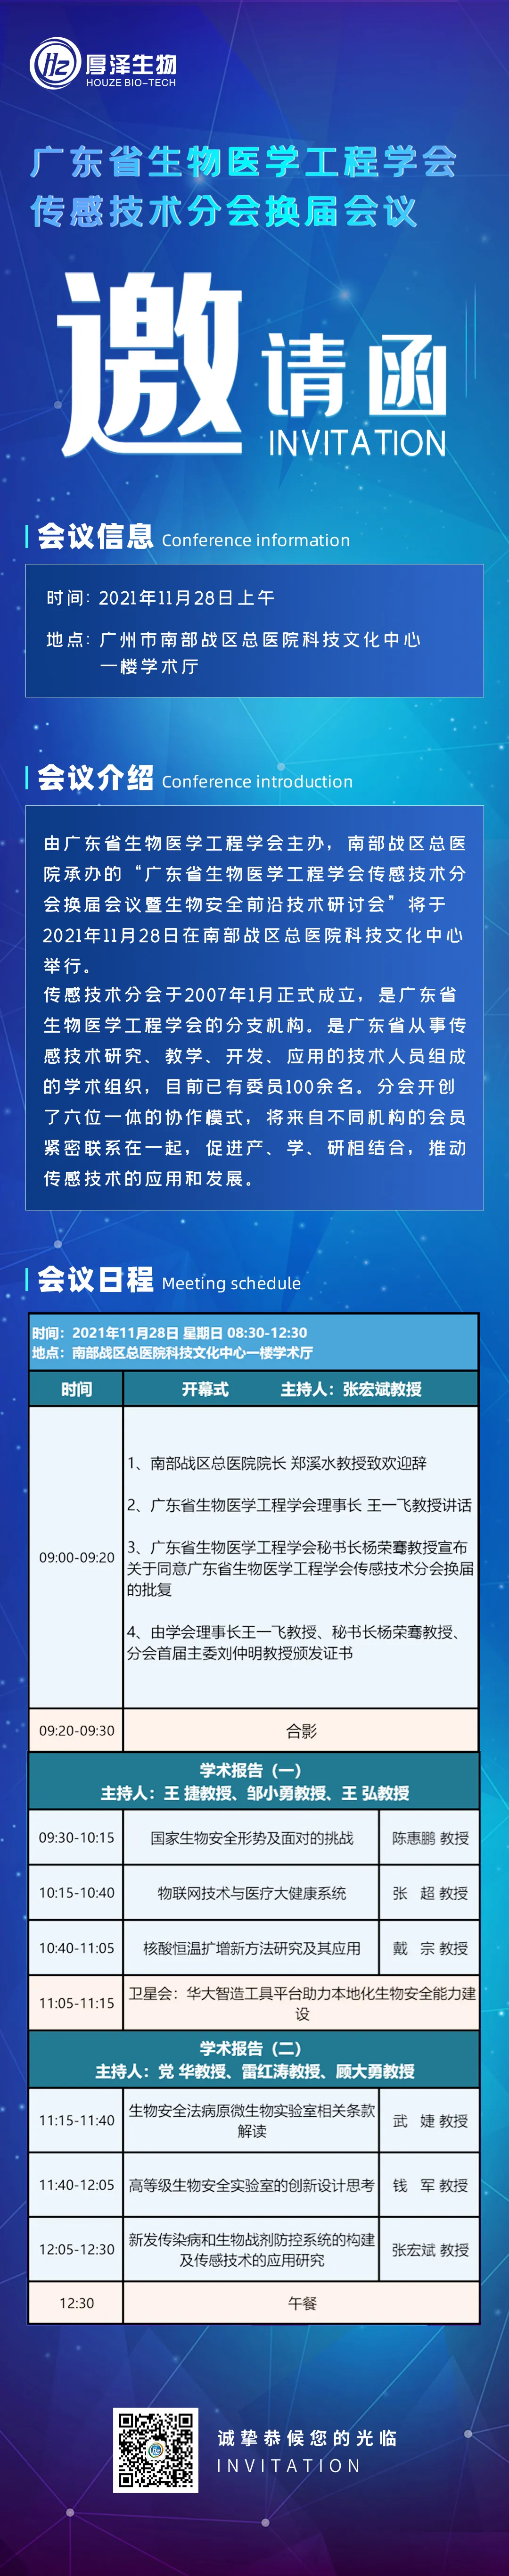 会议邀请丨2021年广东省生物医学工程学会传感技术分会换届会议